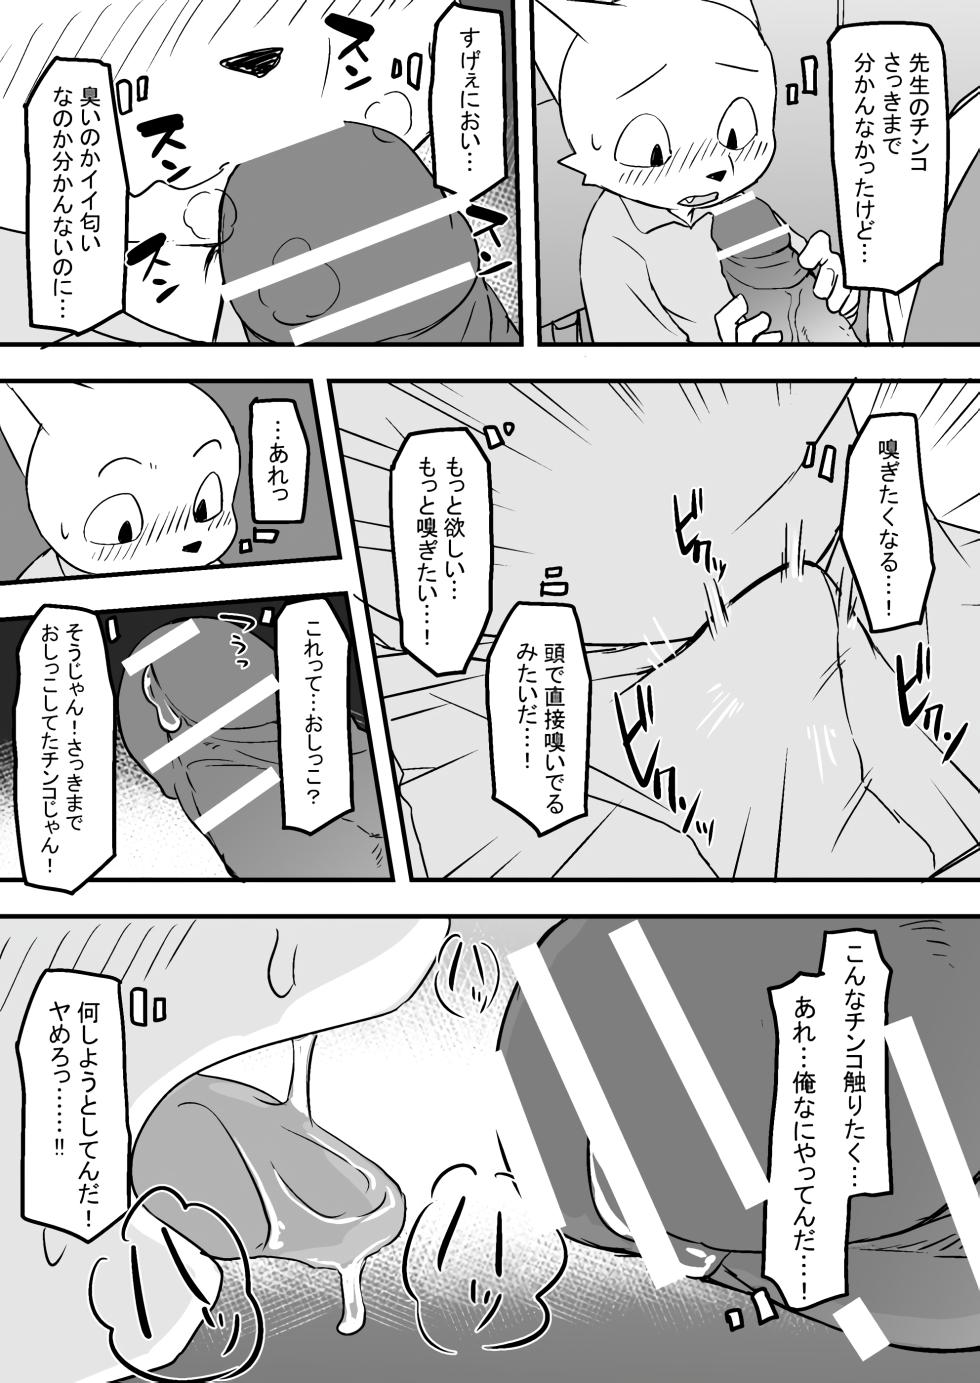 Manmosu Marimo - Sensei Story #1 (Raw) - Page 7